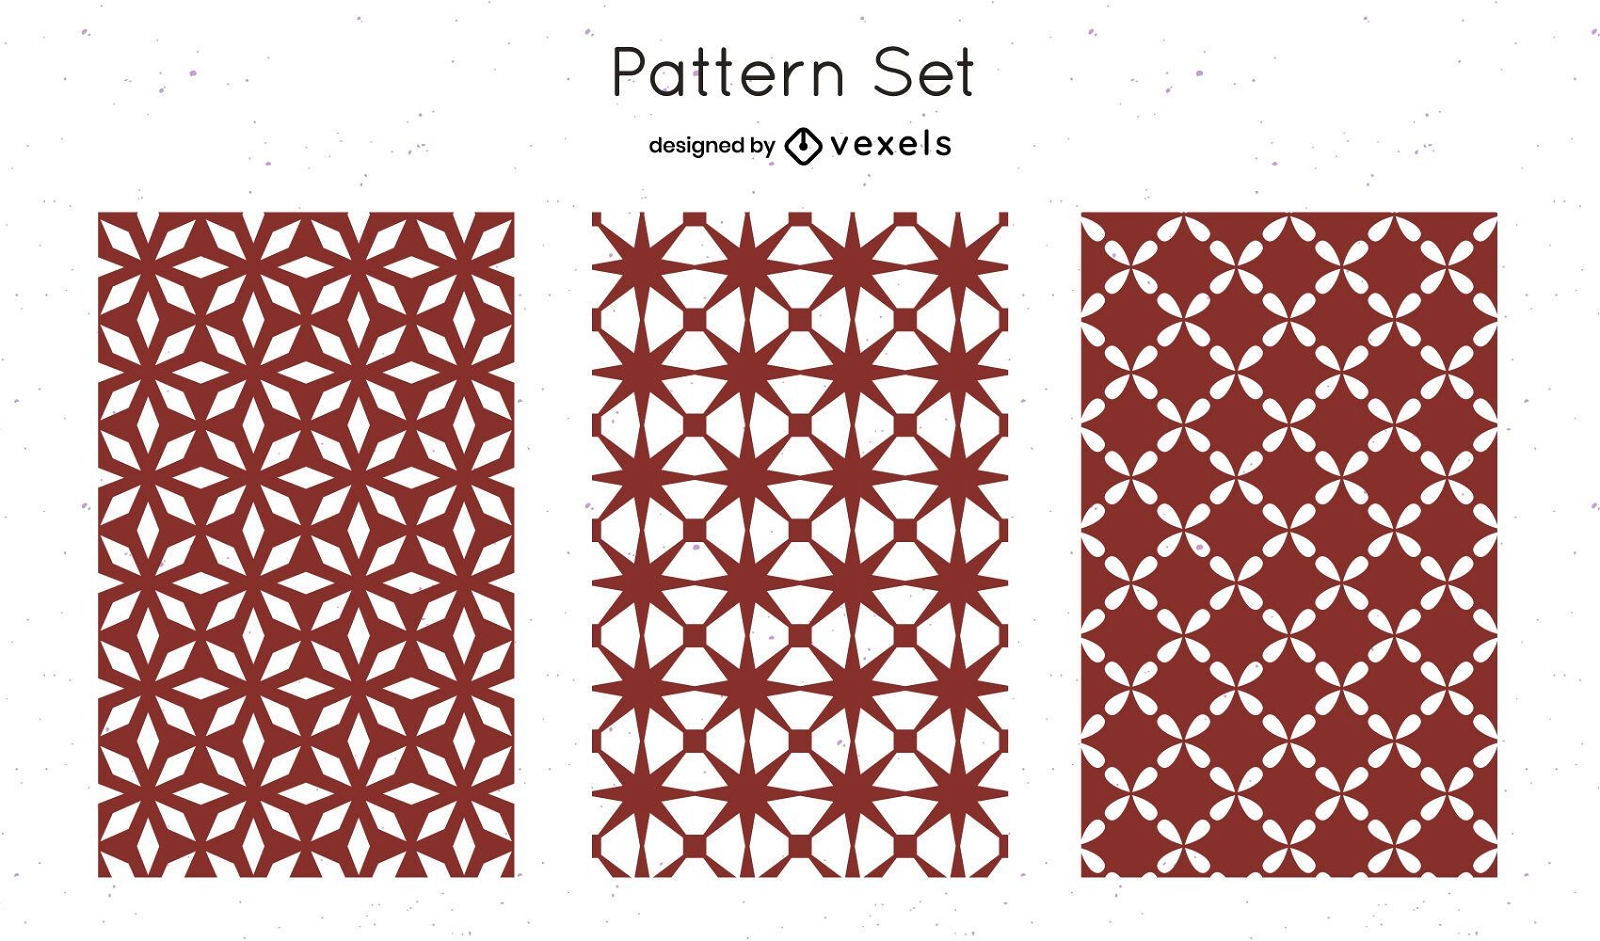 Diseño de patrón geométrico rojo